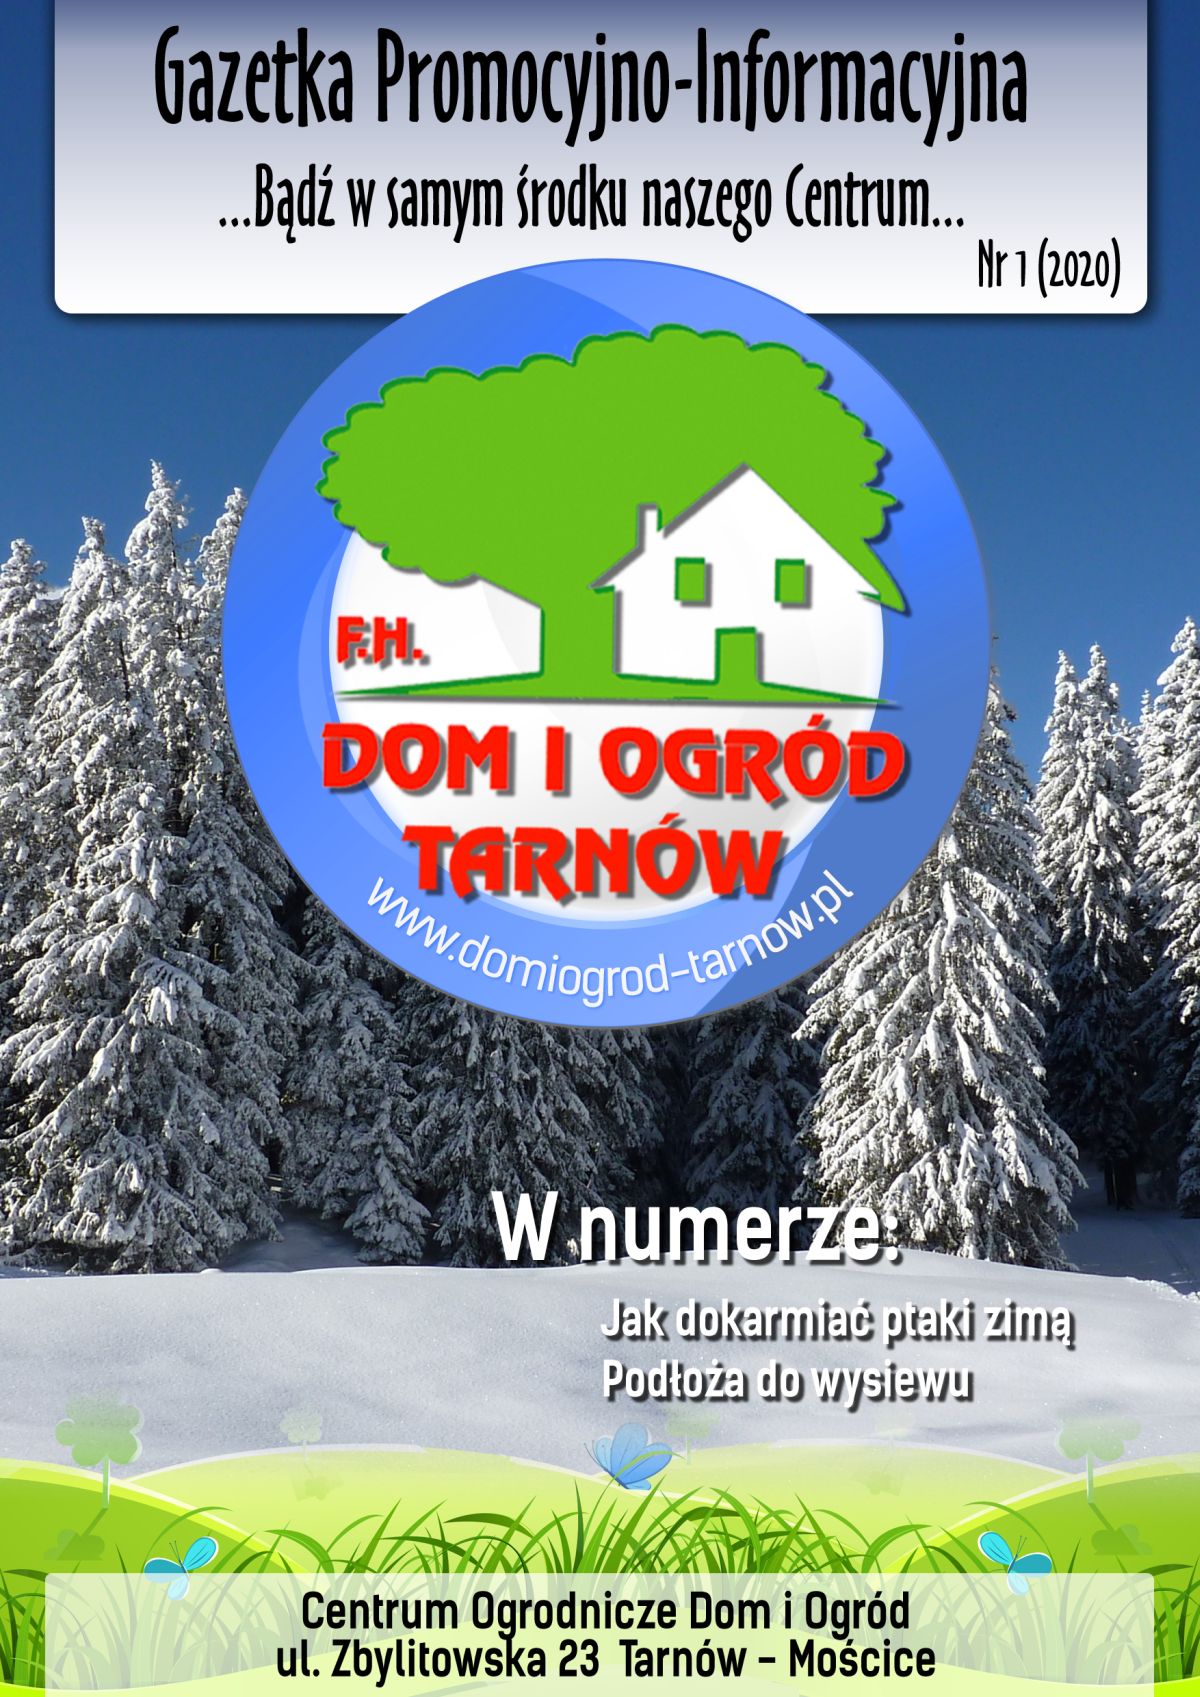 Gazetka Promocyjno-Informacyjna - 01/2020